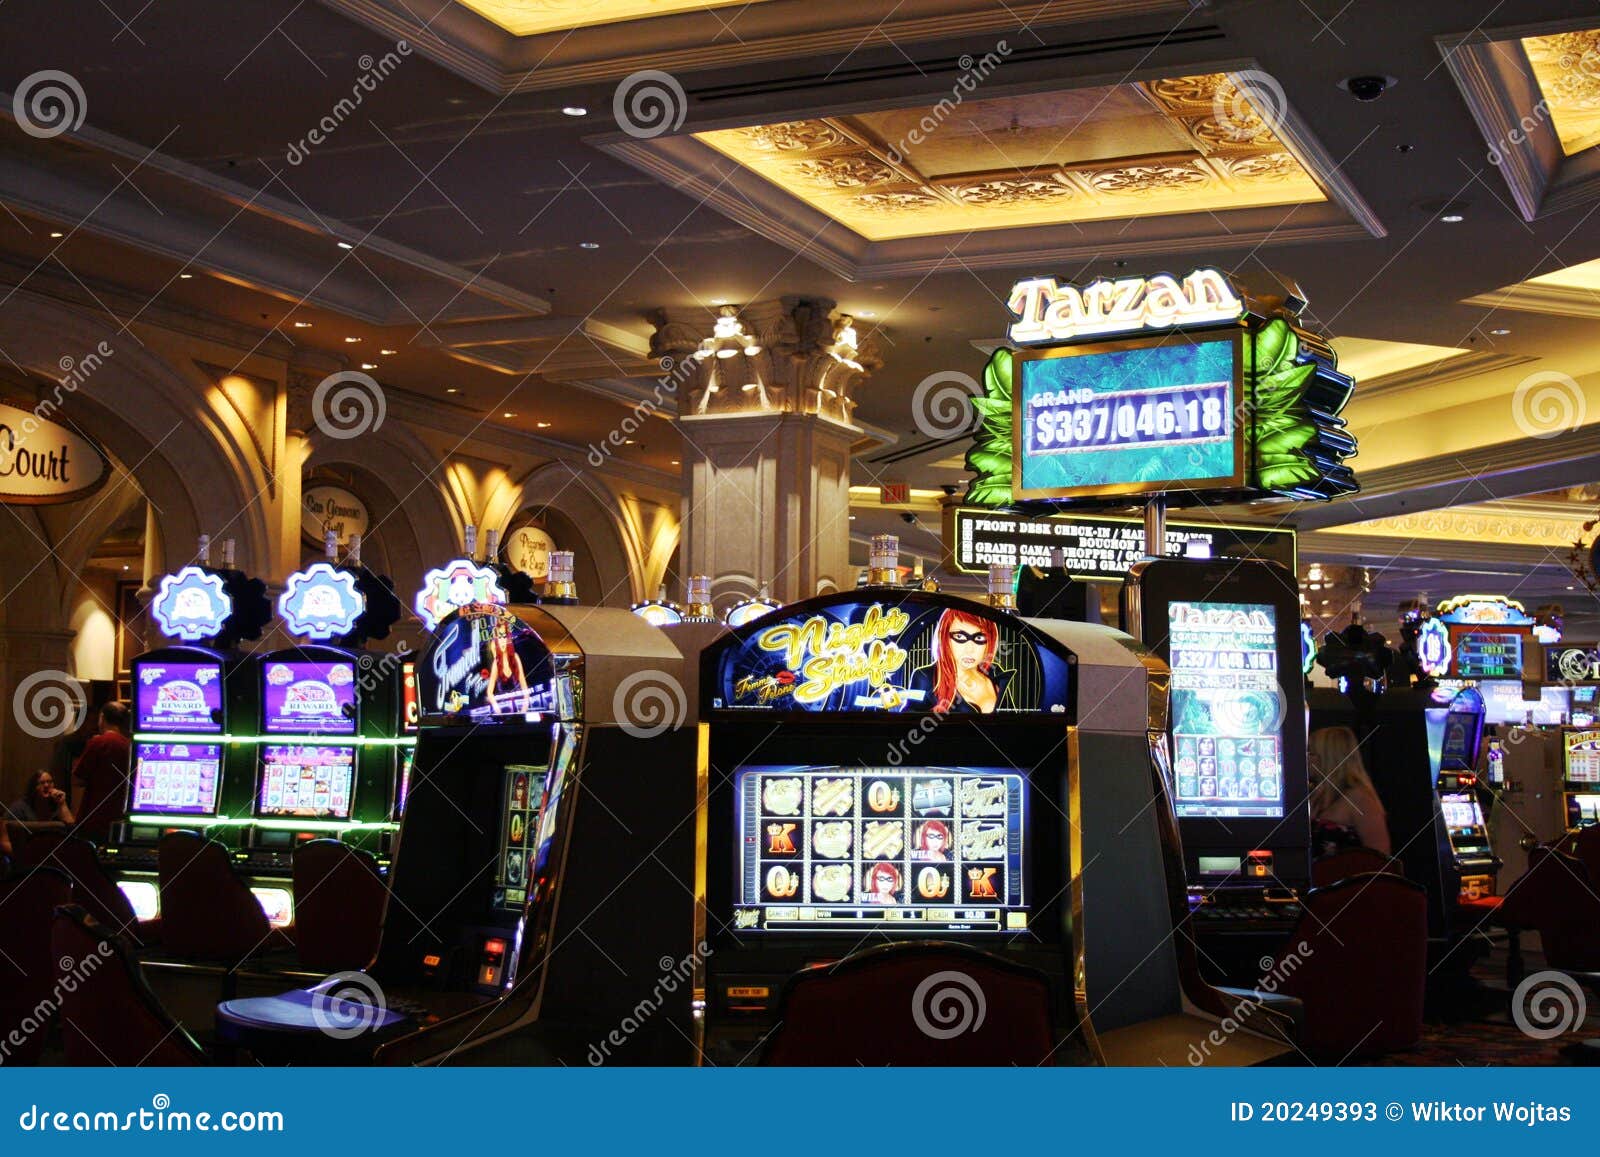 play online casino earn money